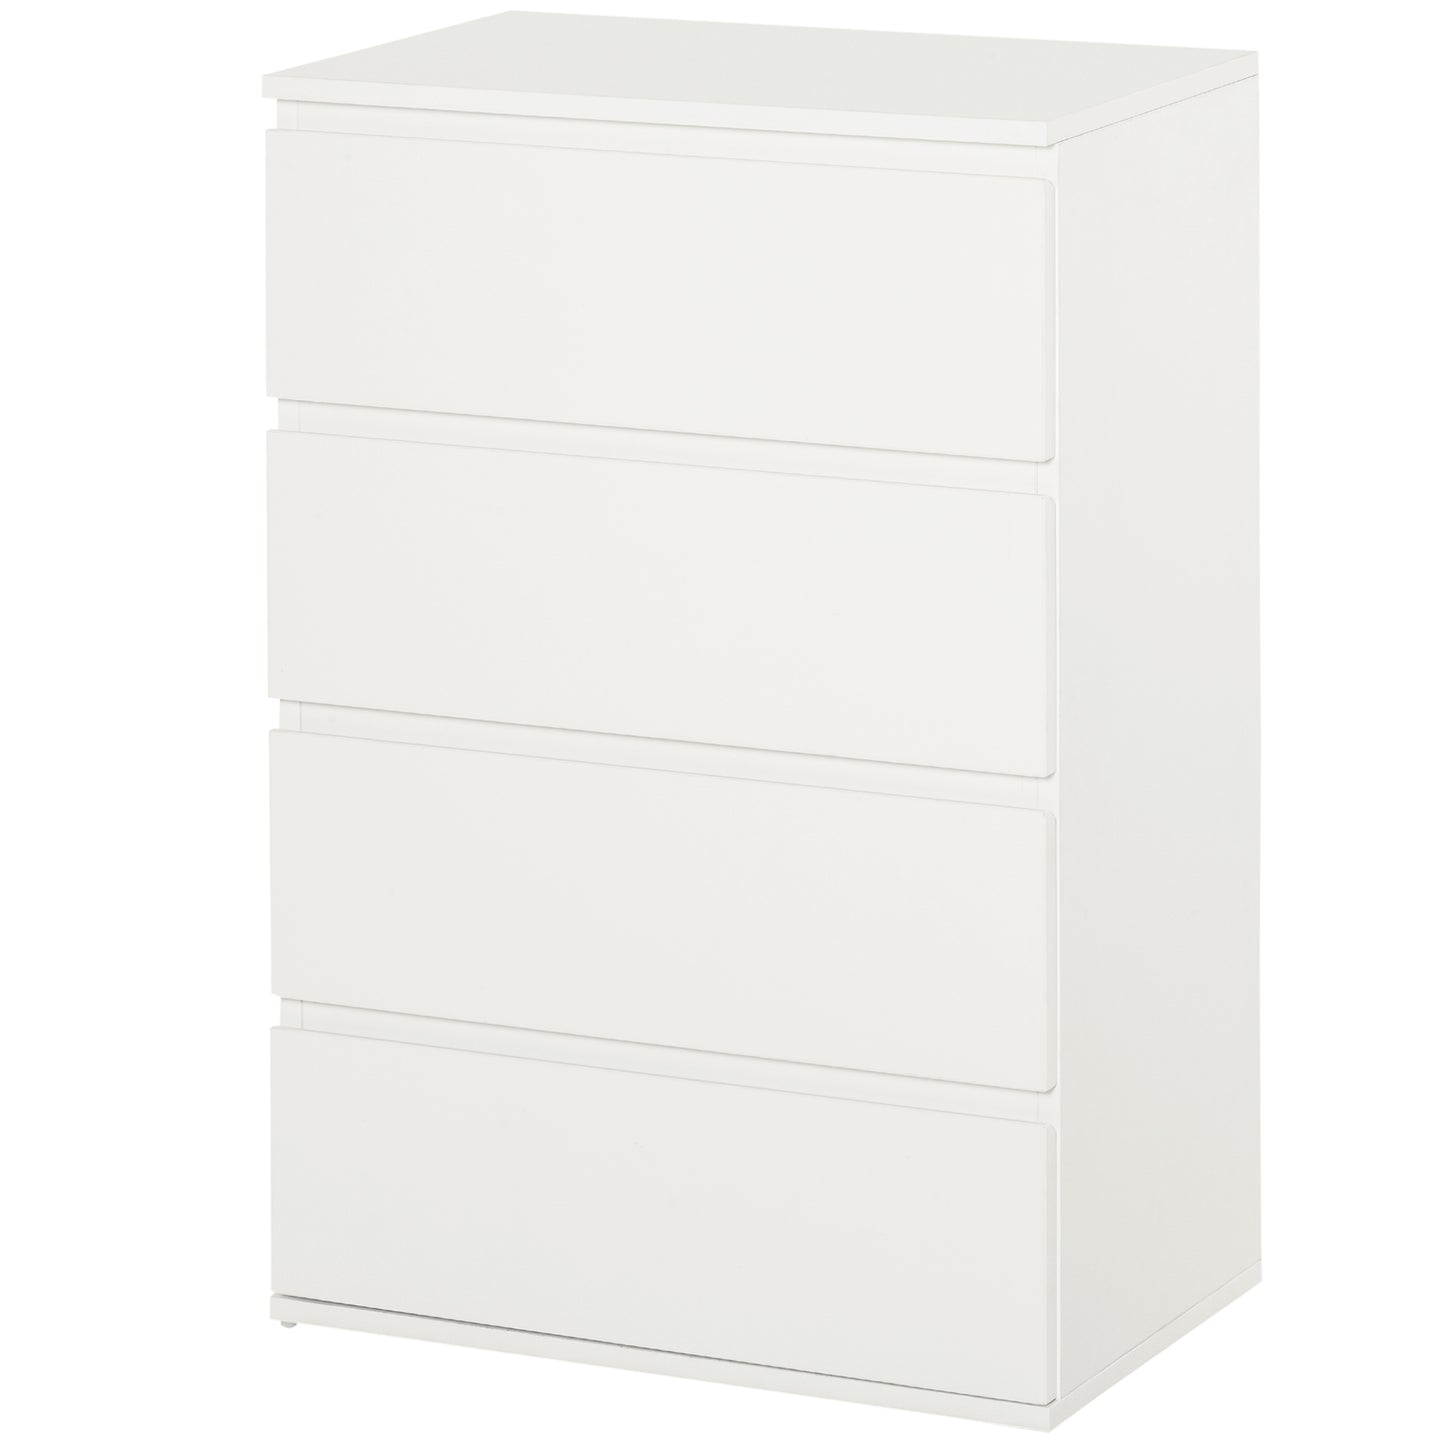 HOMCOM 4 Drawer Cabinet Storage Cupboard Wooden Freestanding Organiser Unit White